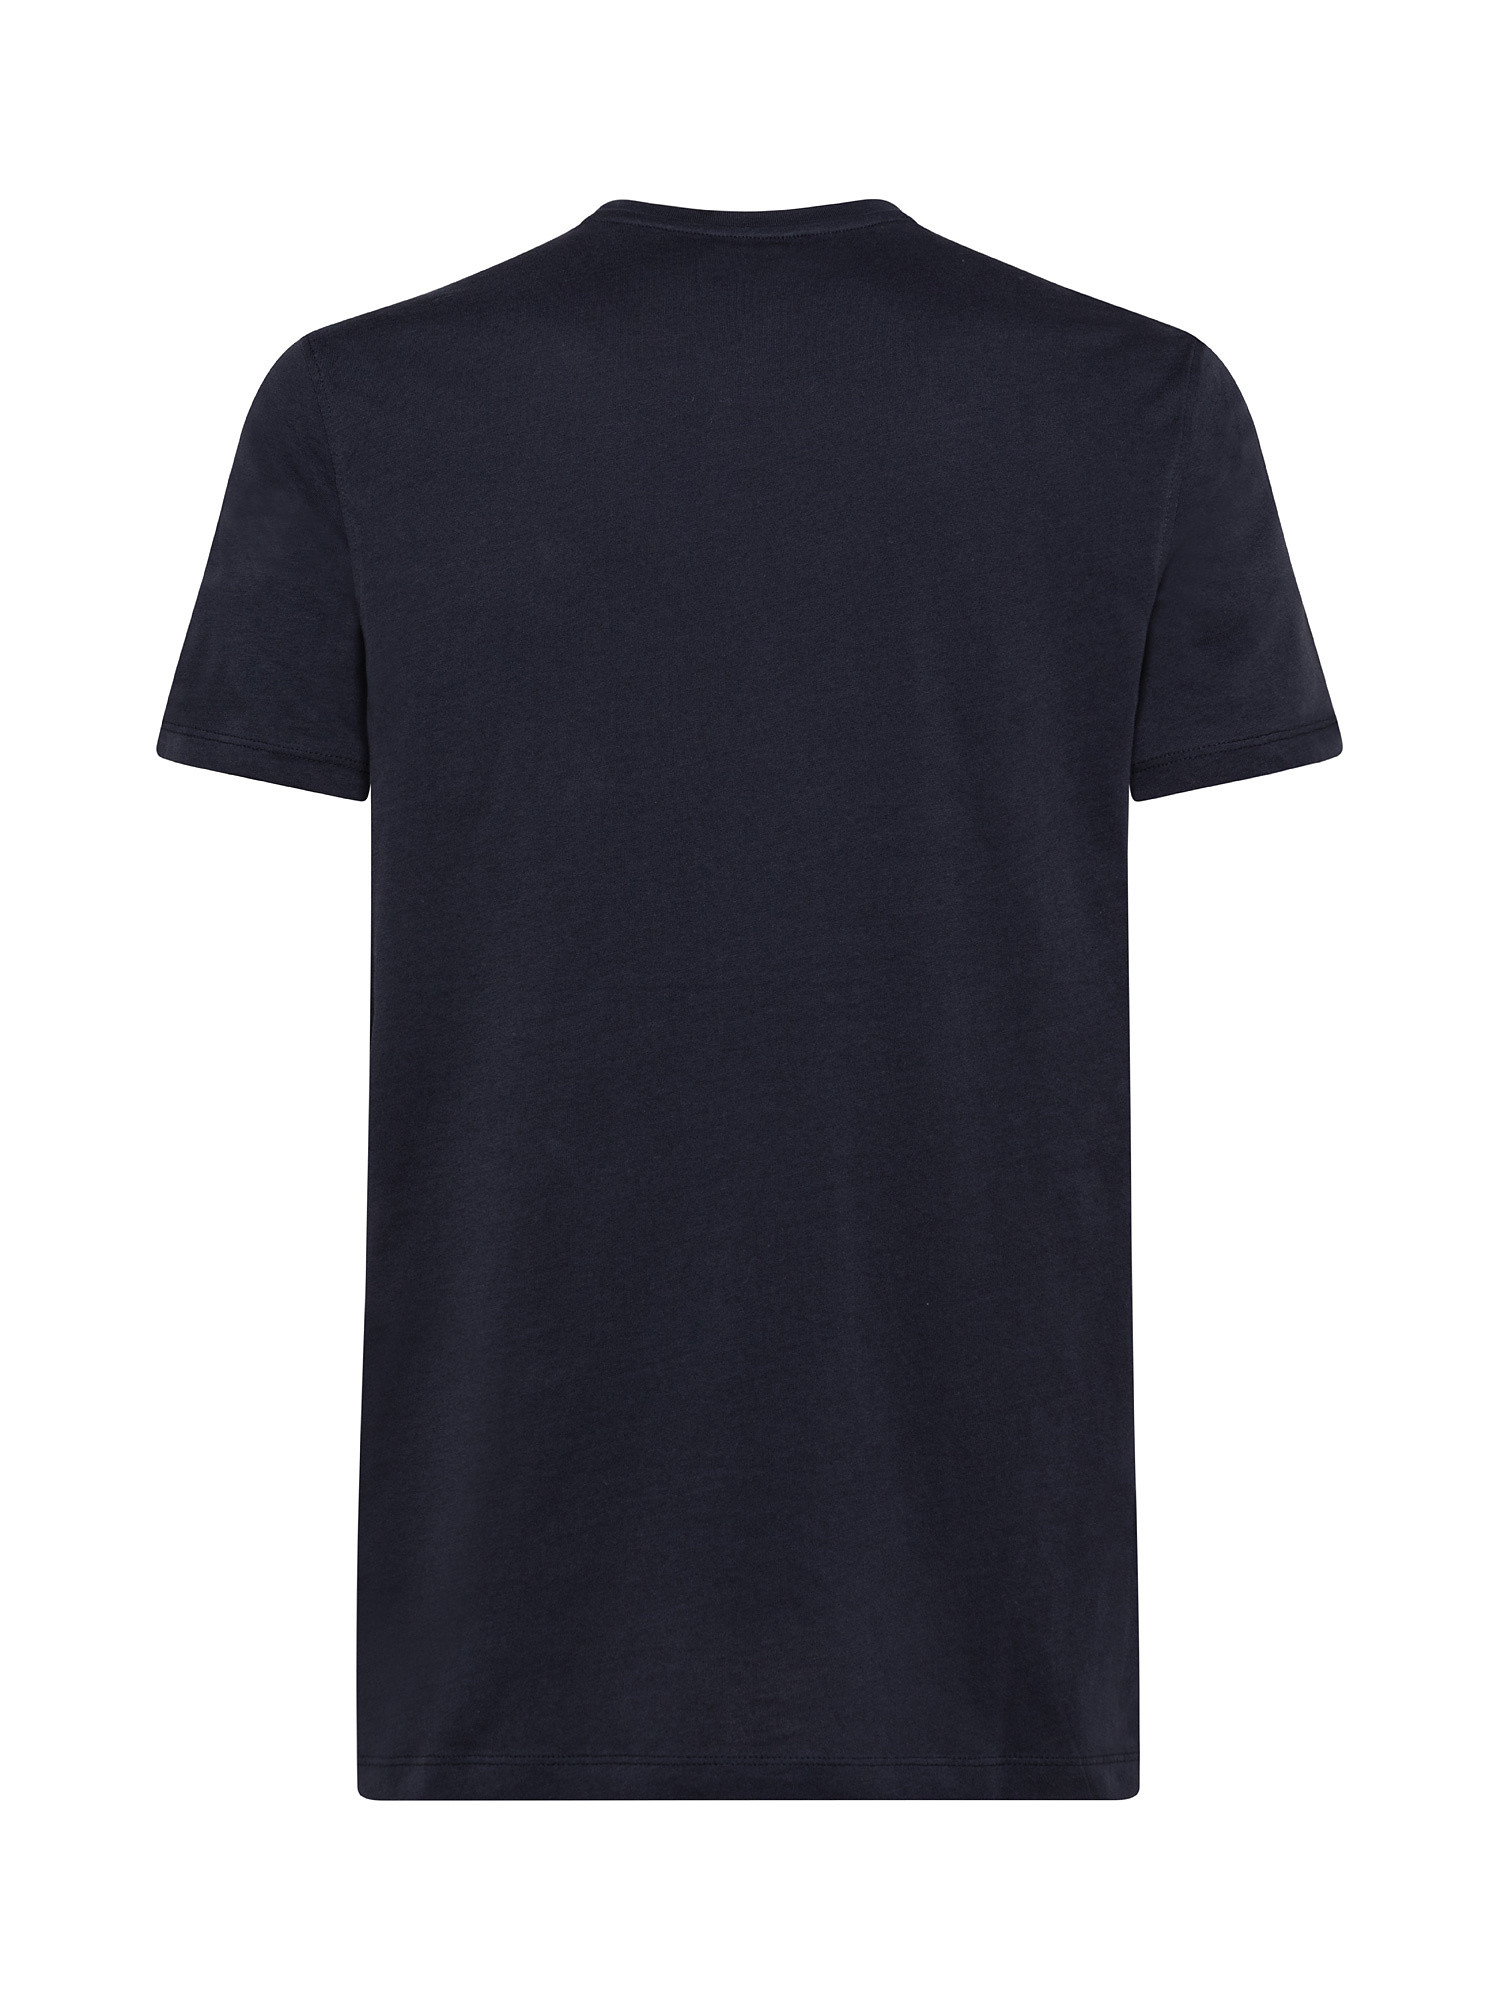 T-shirt girocollo cotone supima tinta unita, Blu, large